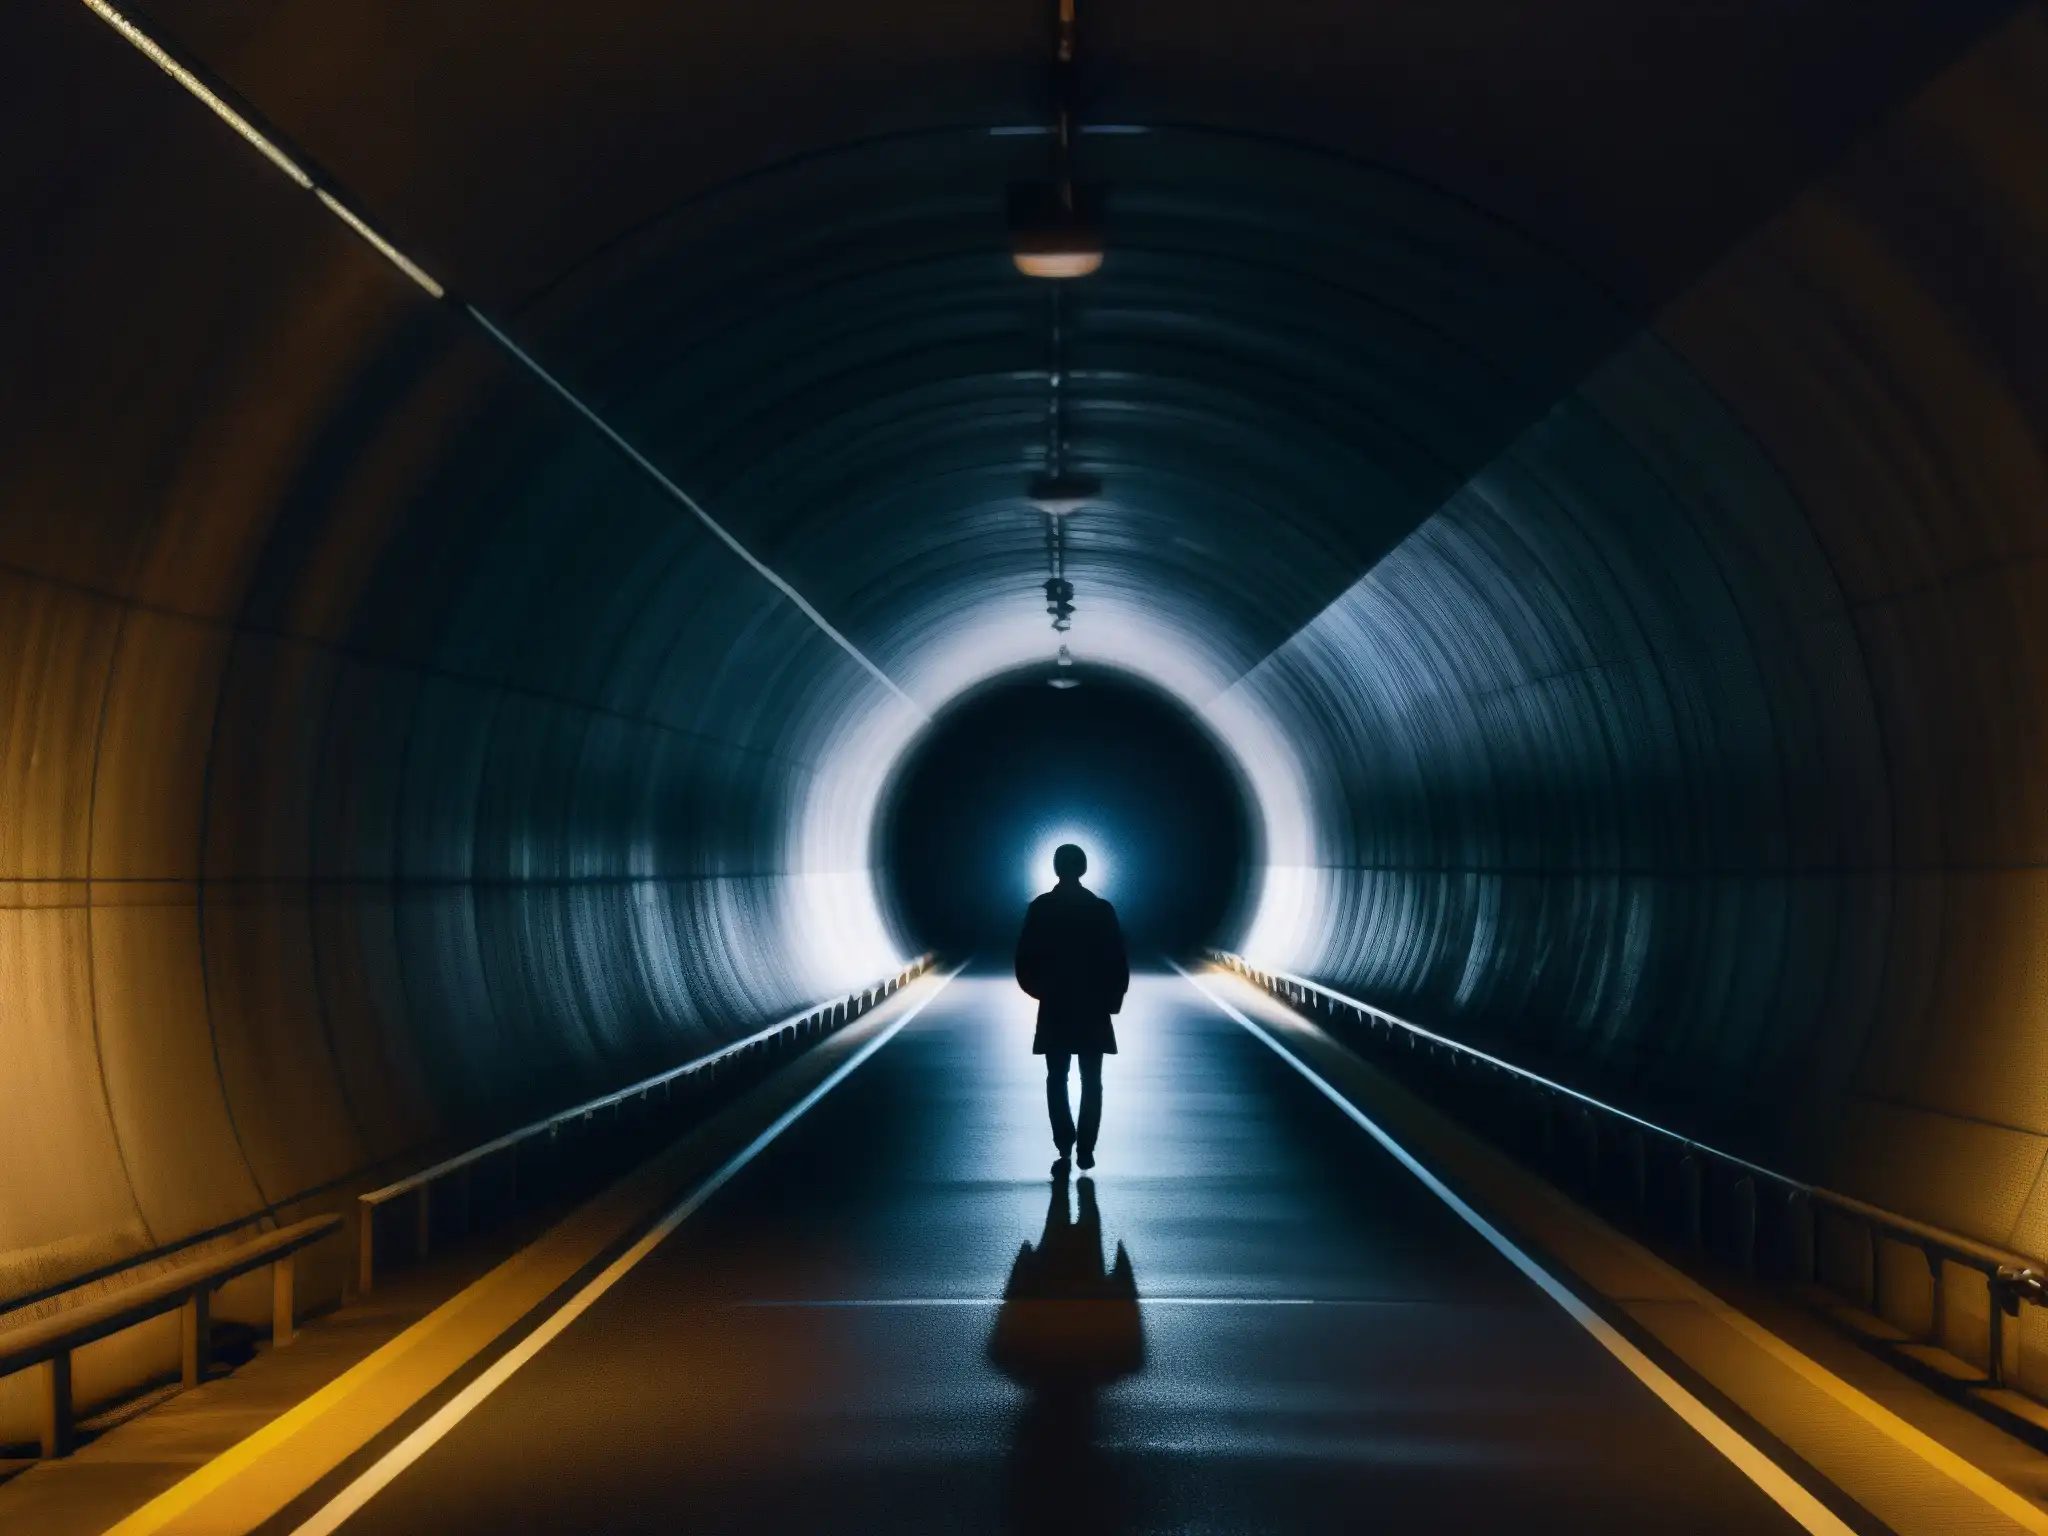 Figura solitaria contemplando la entrada del Túnel de Yamate de noche, evocando misterio y la leyenda de la Mujer del Túnel de Yamate